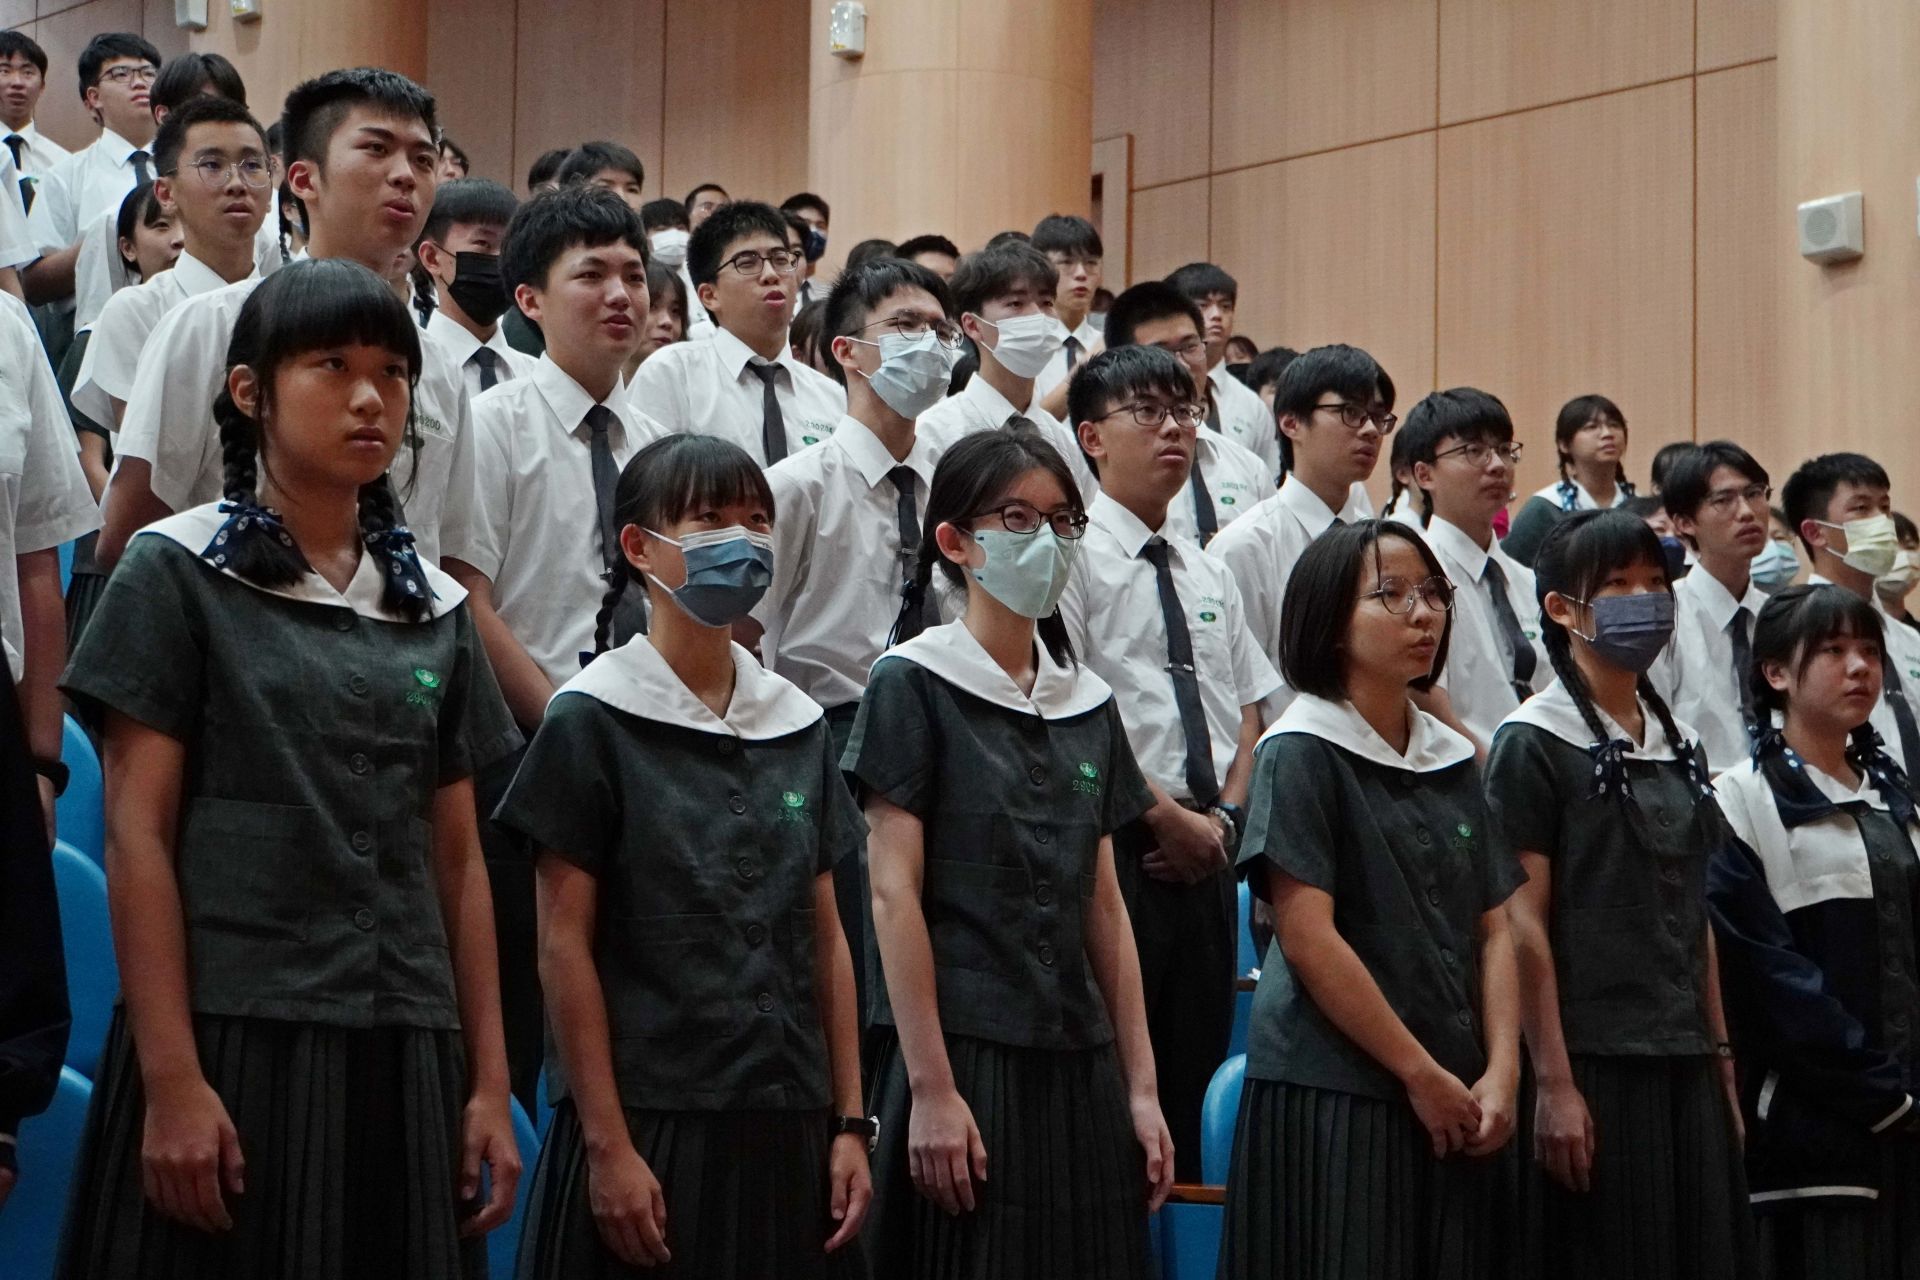 慈濟歌妙手生華手語比賽今年在全體悠揚的校歌樂聲中拉開序幕。